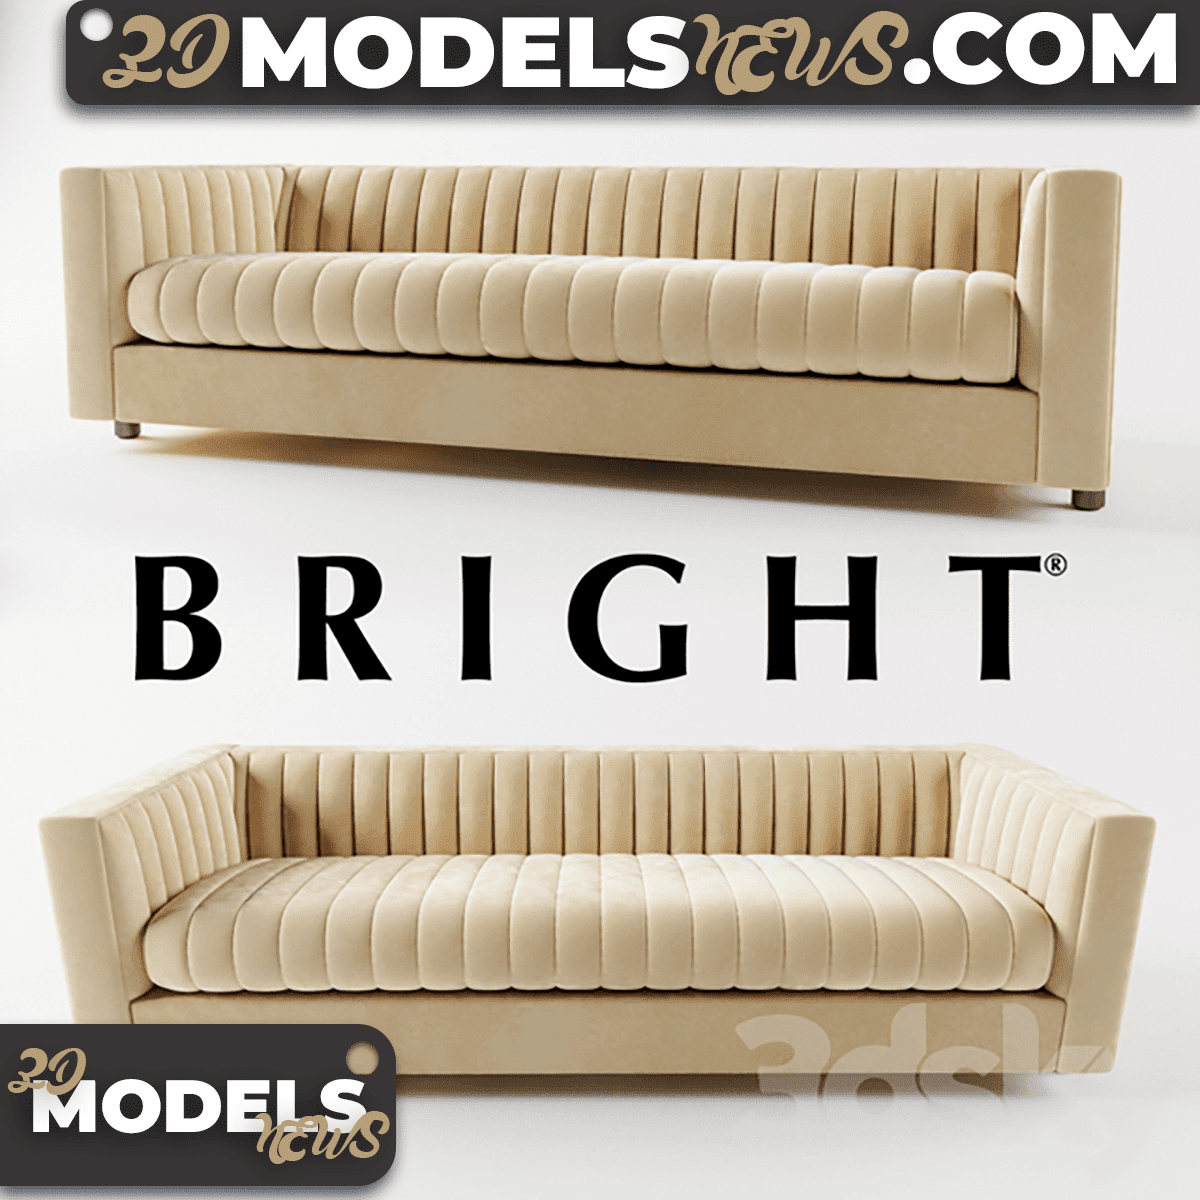 Bright Gray Sofa Model Douglas Levine 1